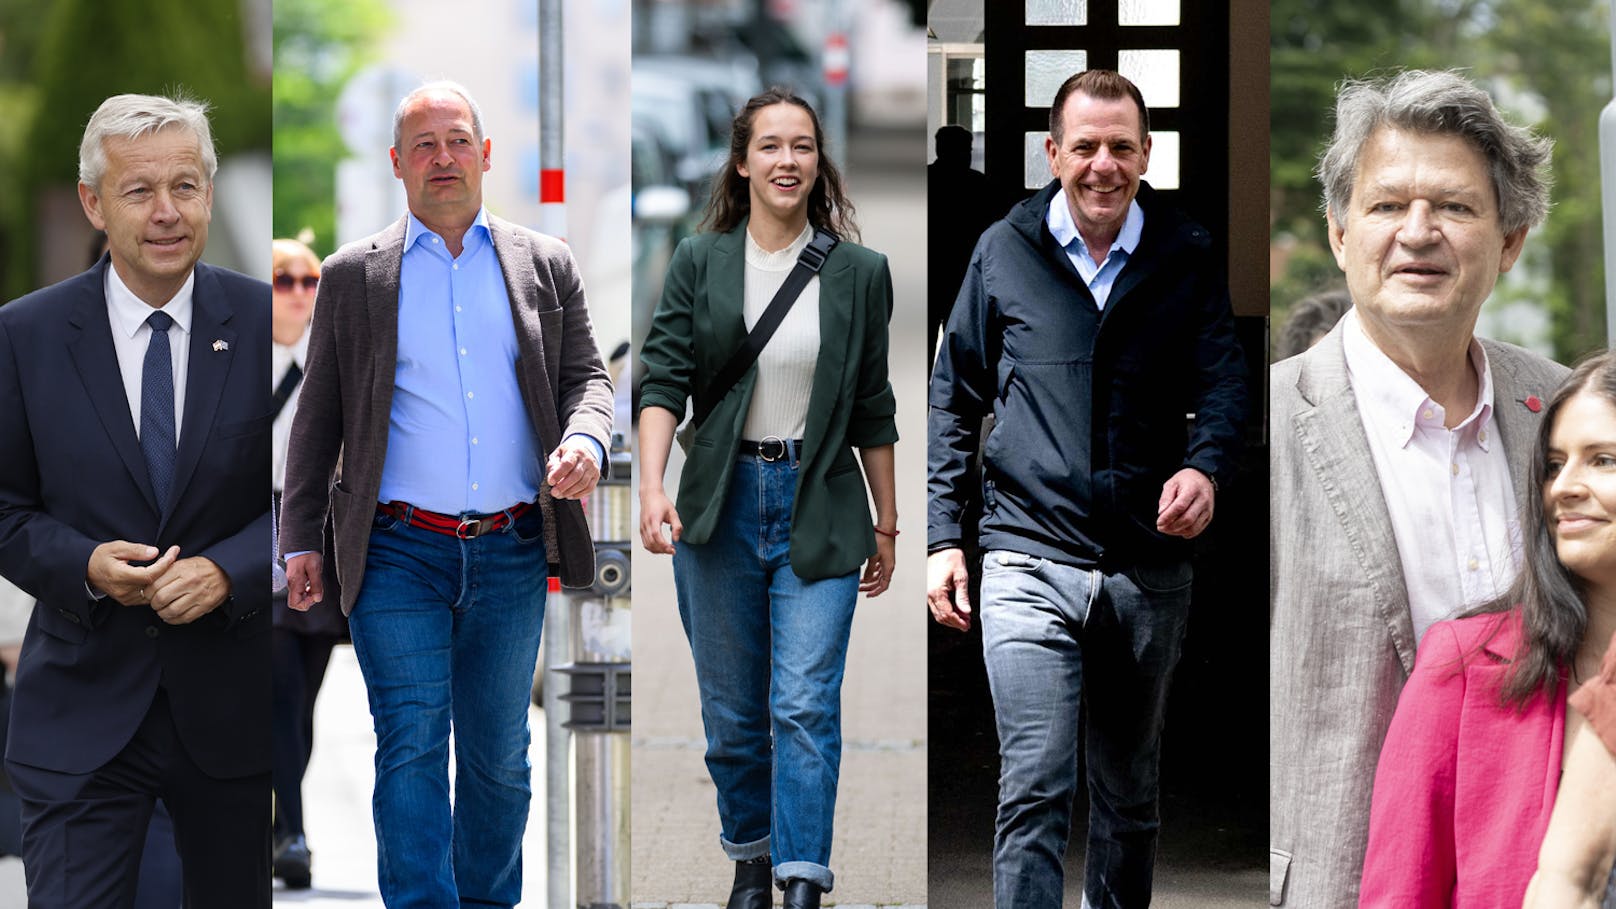 Die EU-Spitzenkandidaten am Weg zur Wahlurne.